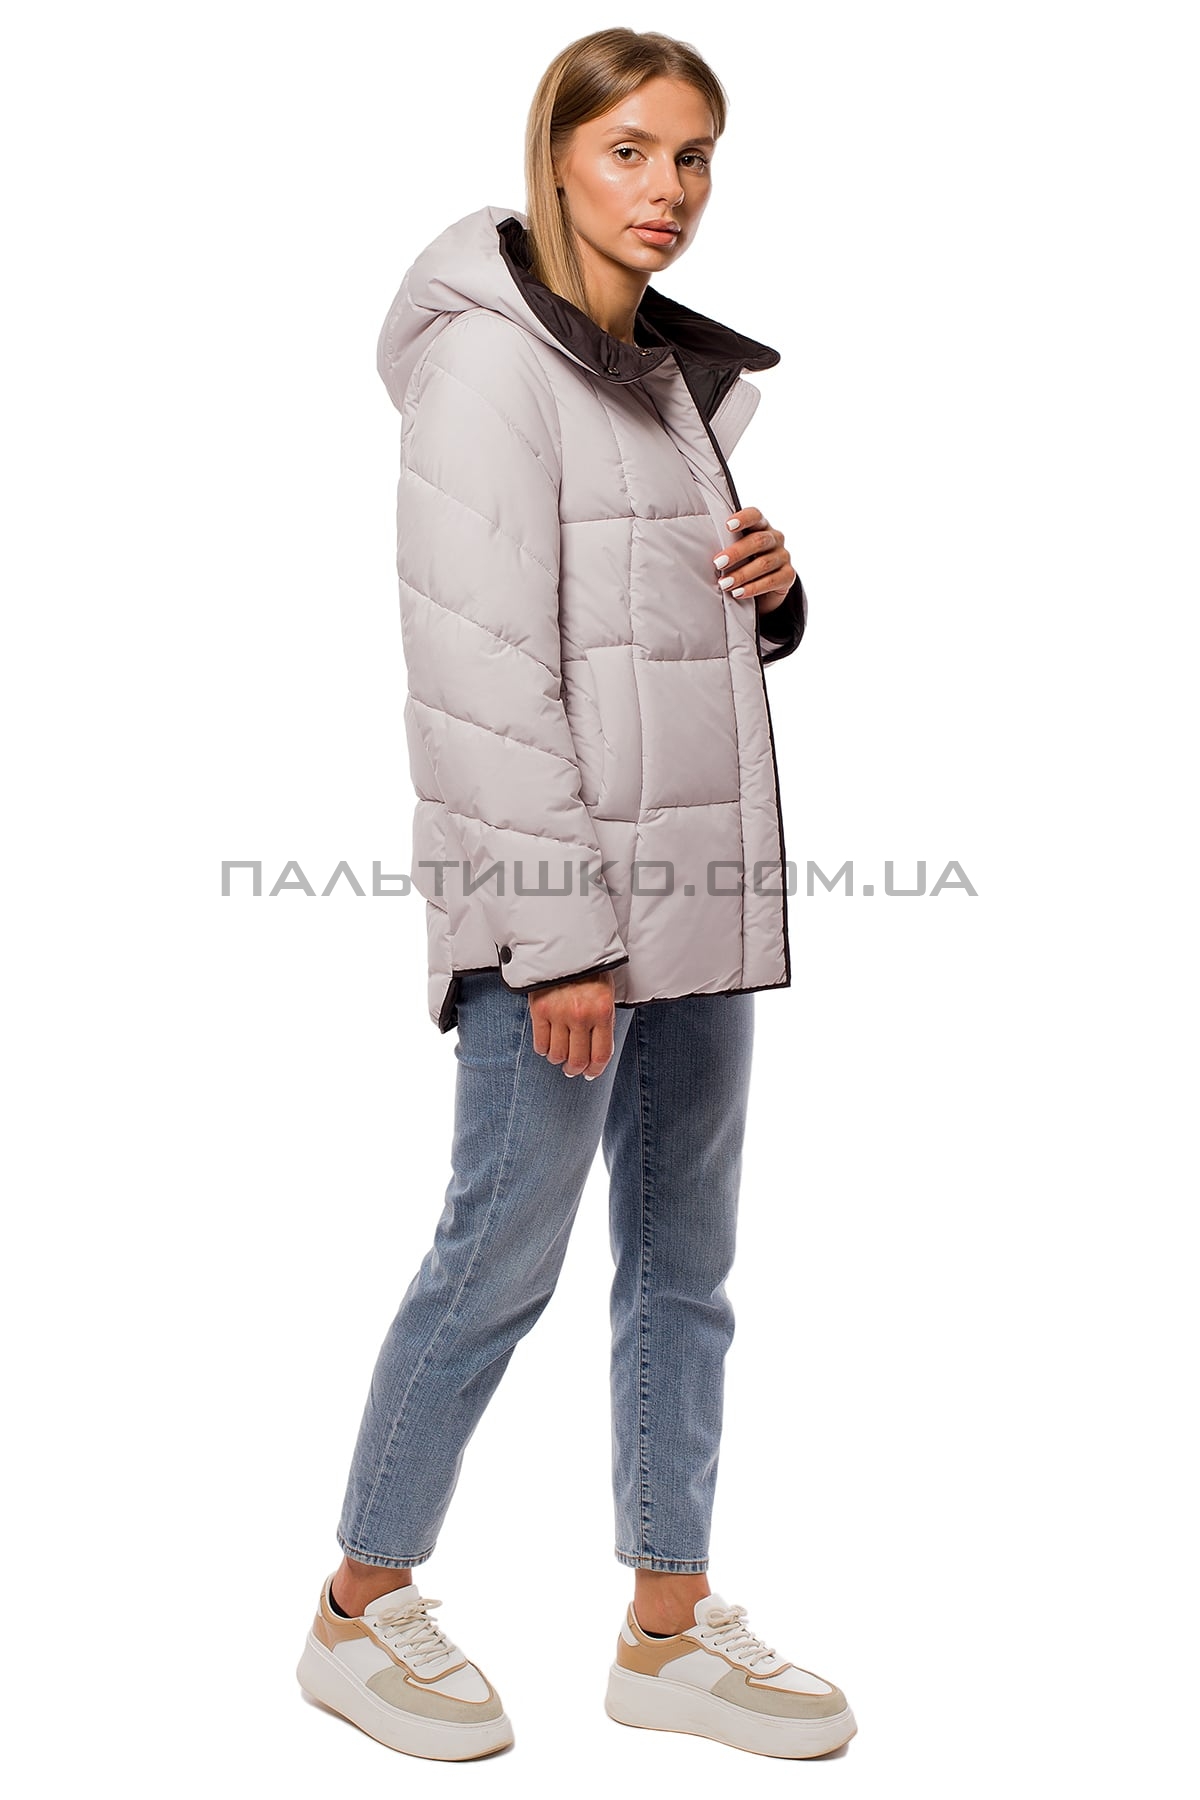  Зимова жіноча куртка чорно-біла